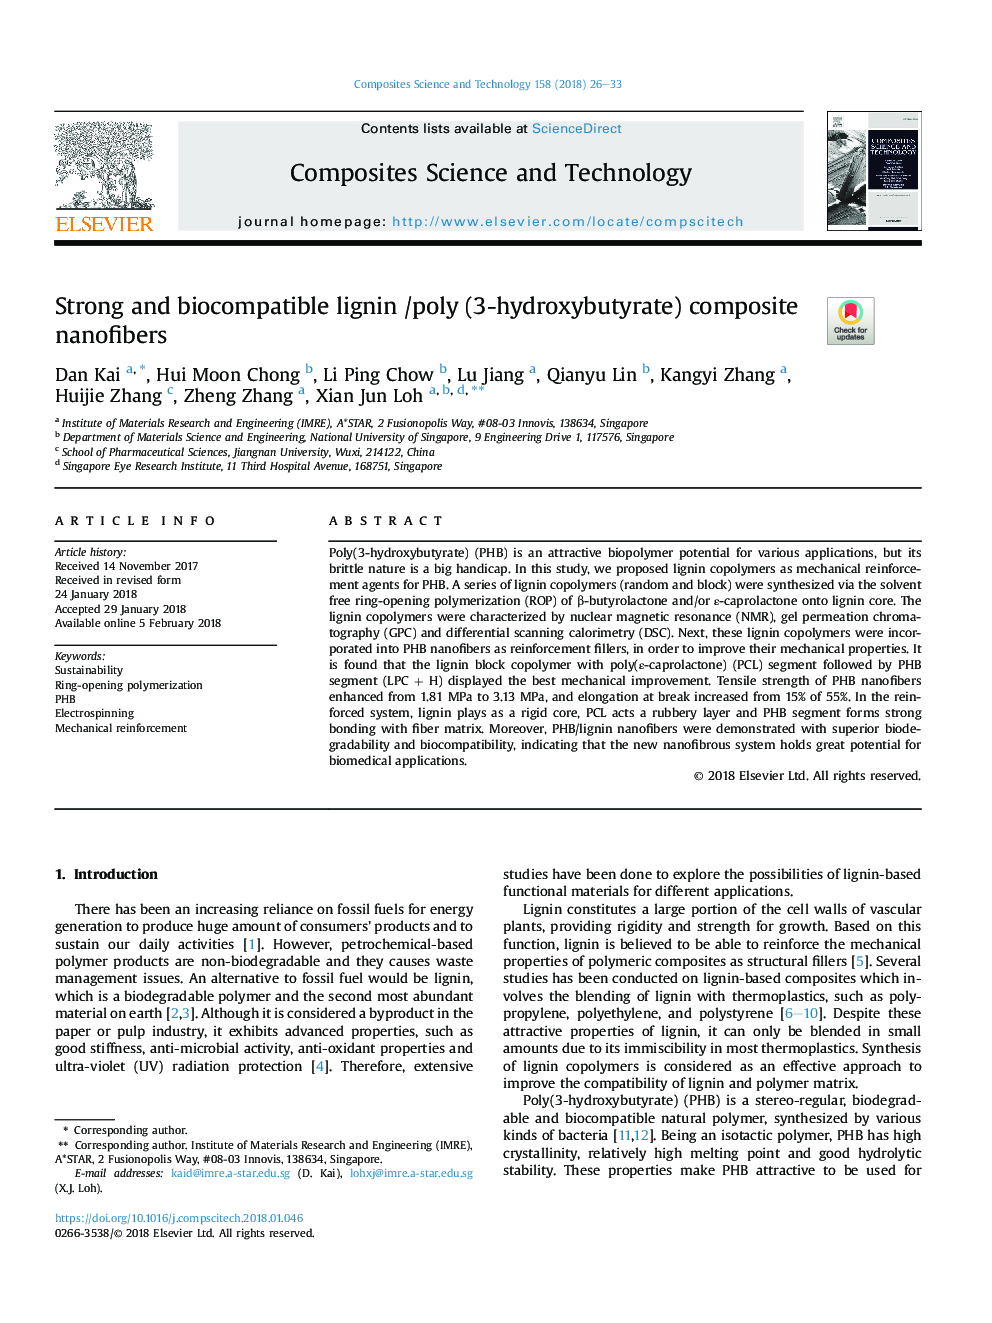 نانوکامپوزیت کامپوزیت کامپوزیتی لیگنین / پلی (3-هیدروکسی بوتیرات) قوی و زیست سازگار 